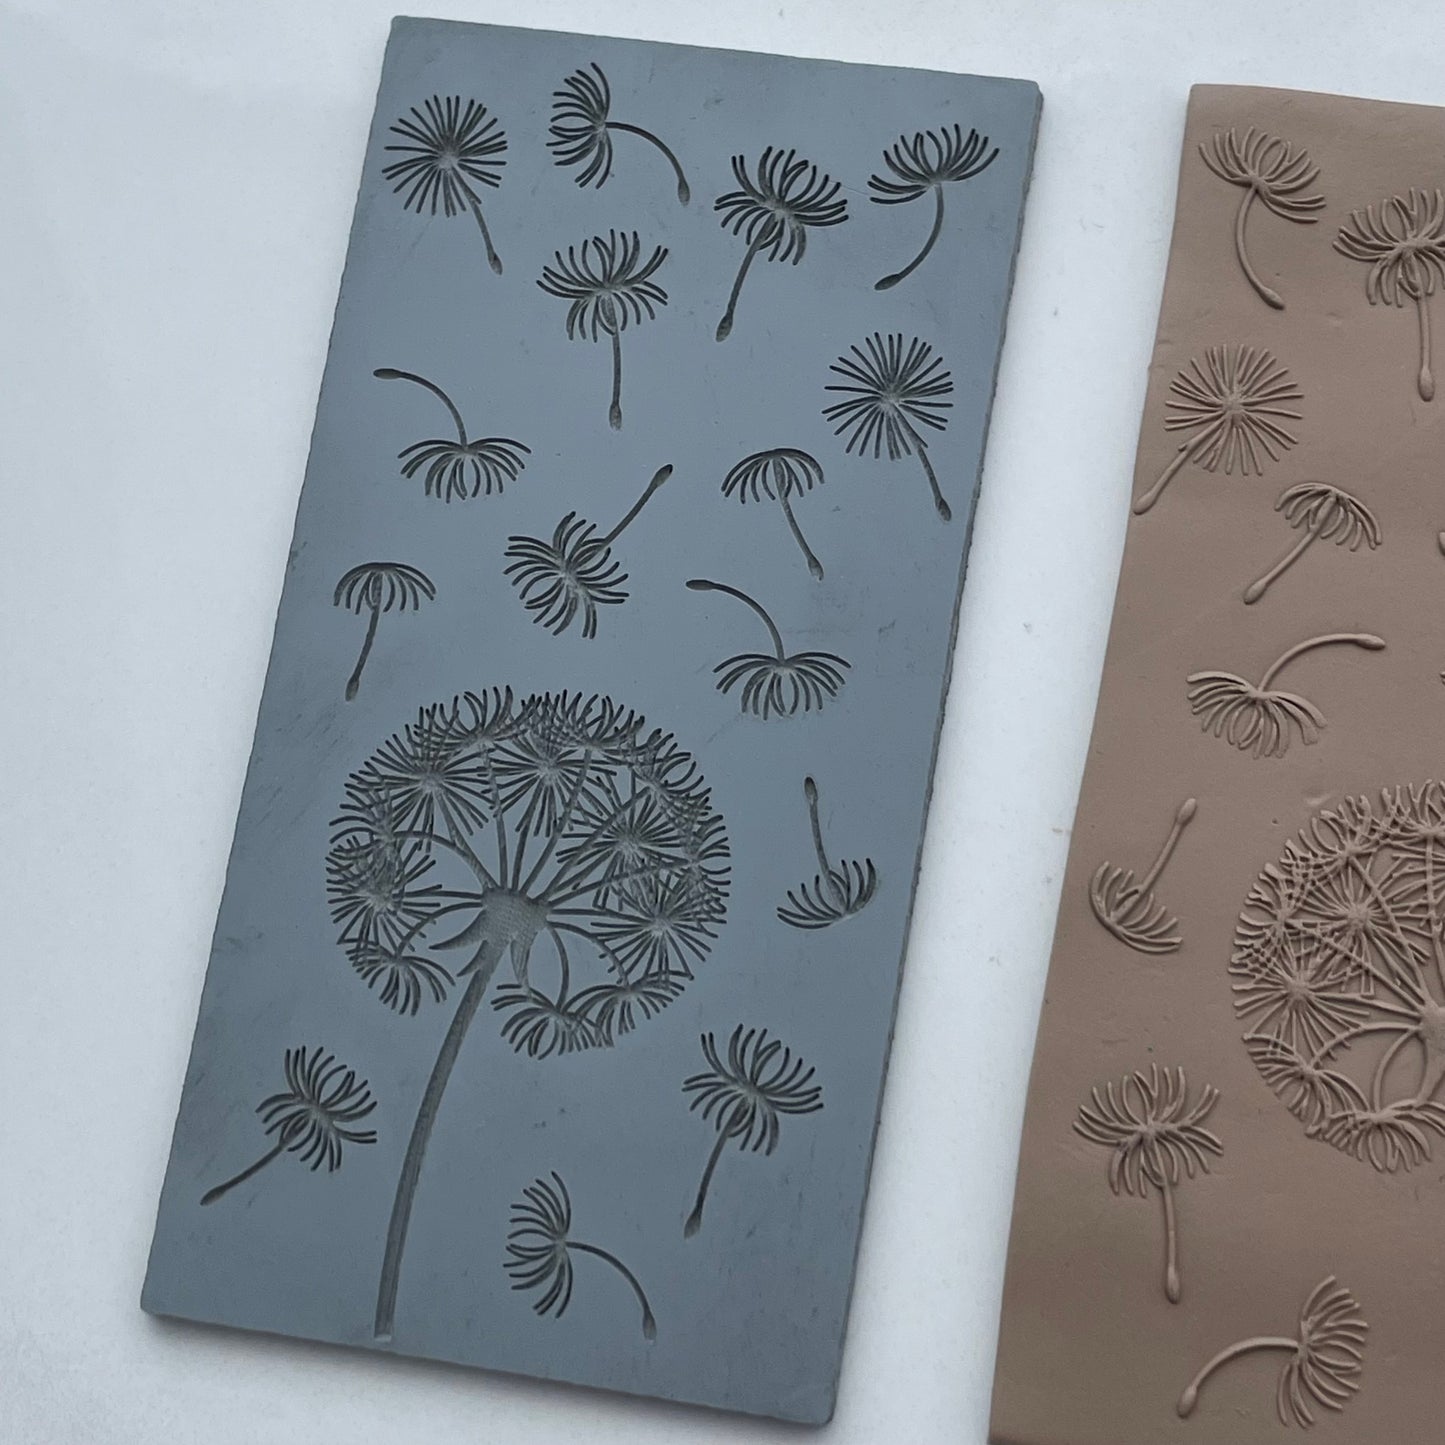 Dandelions texture mat